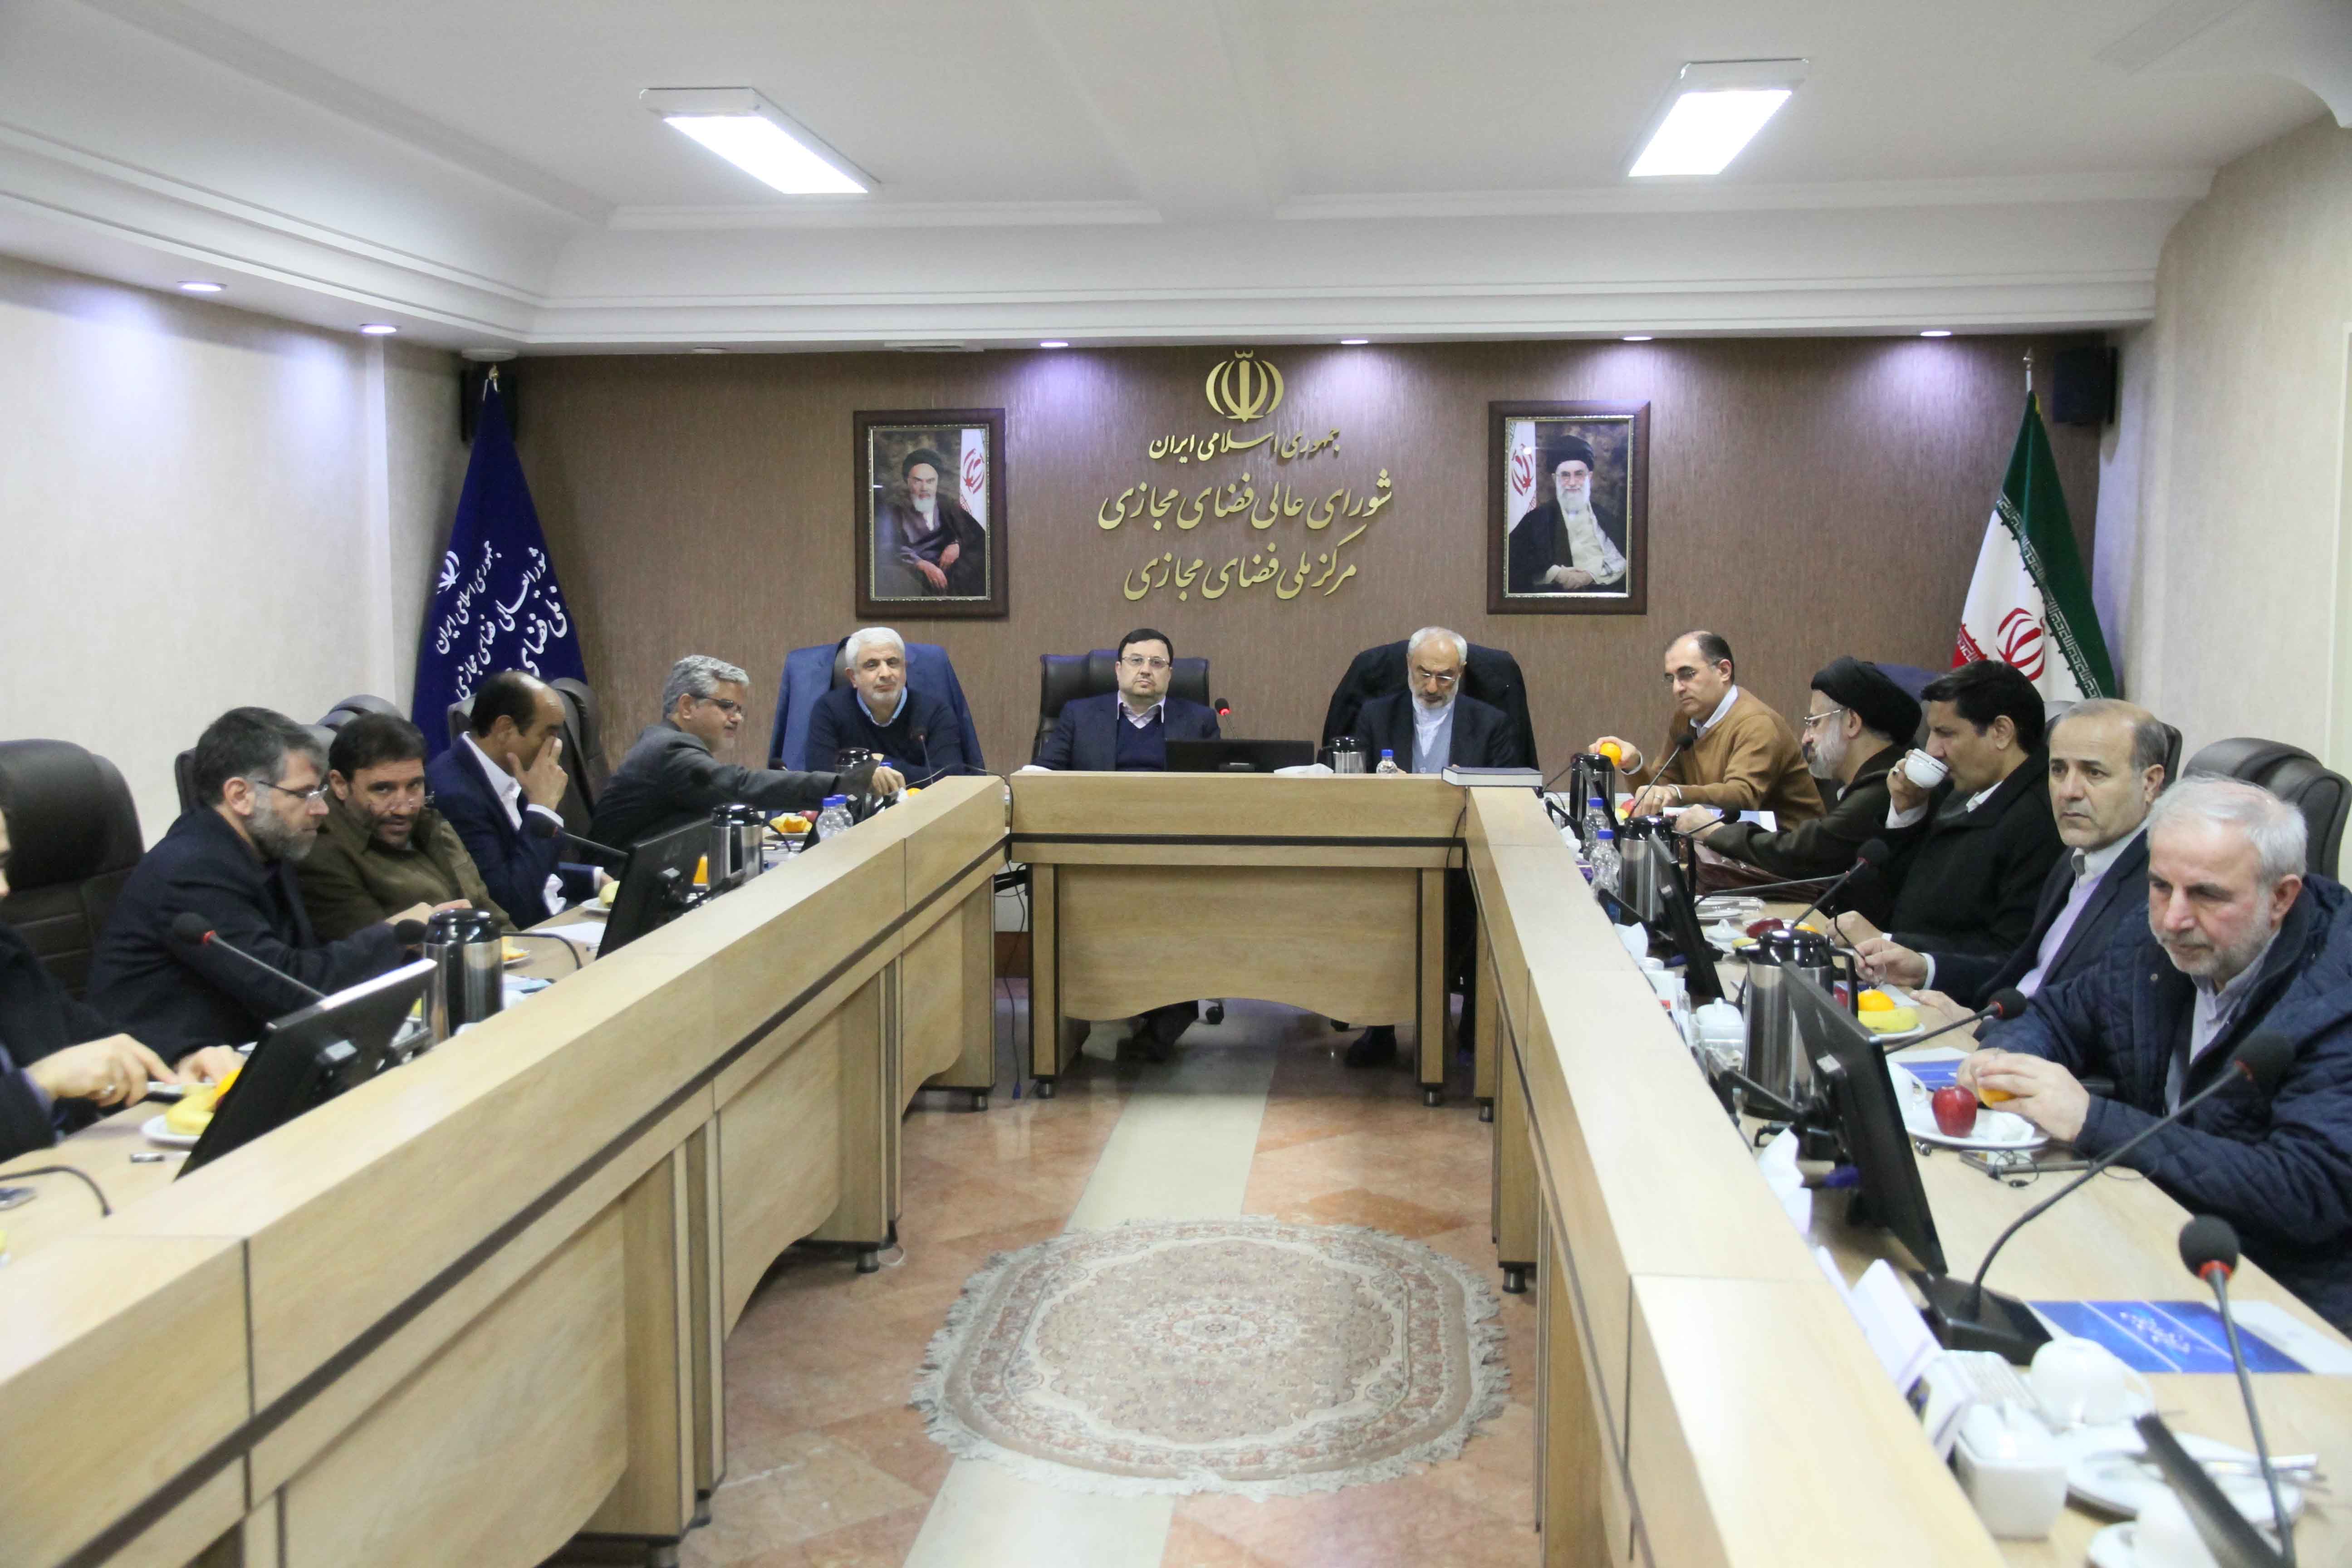 ضرورت تشکیل کمیسیون یا فراکسیون فضای مجازی در مجلس شورای اسلامی